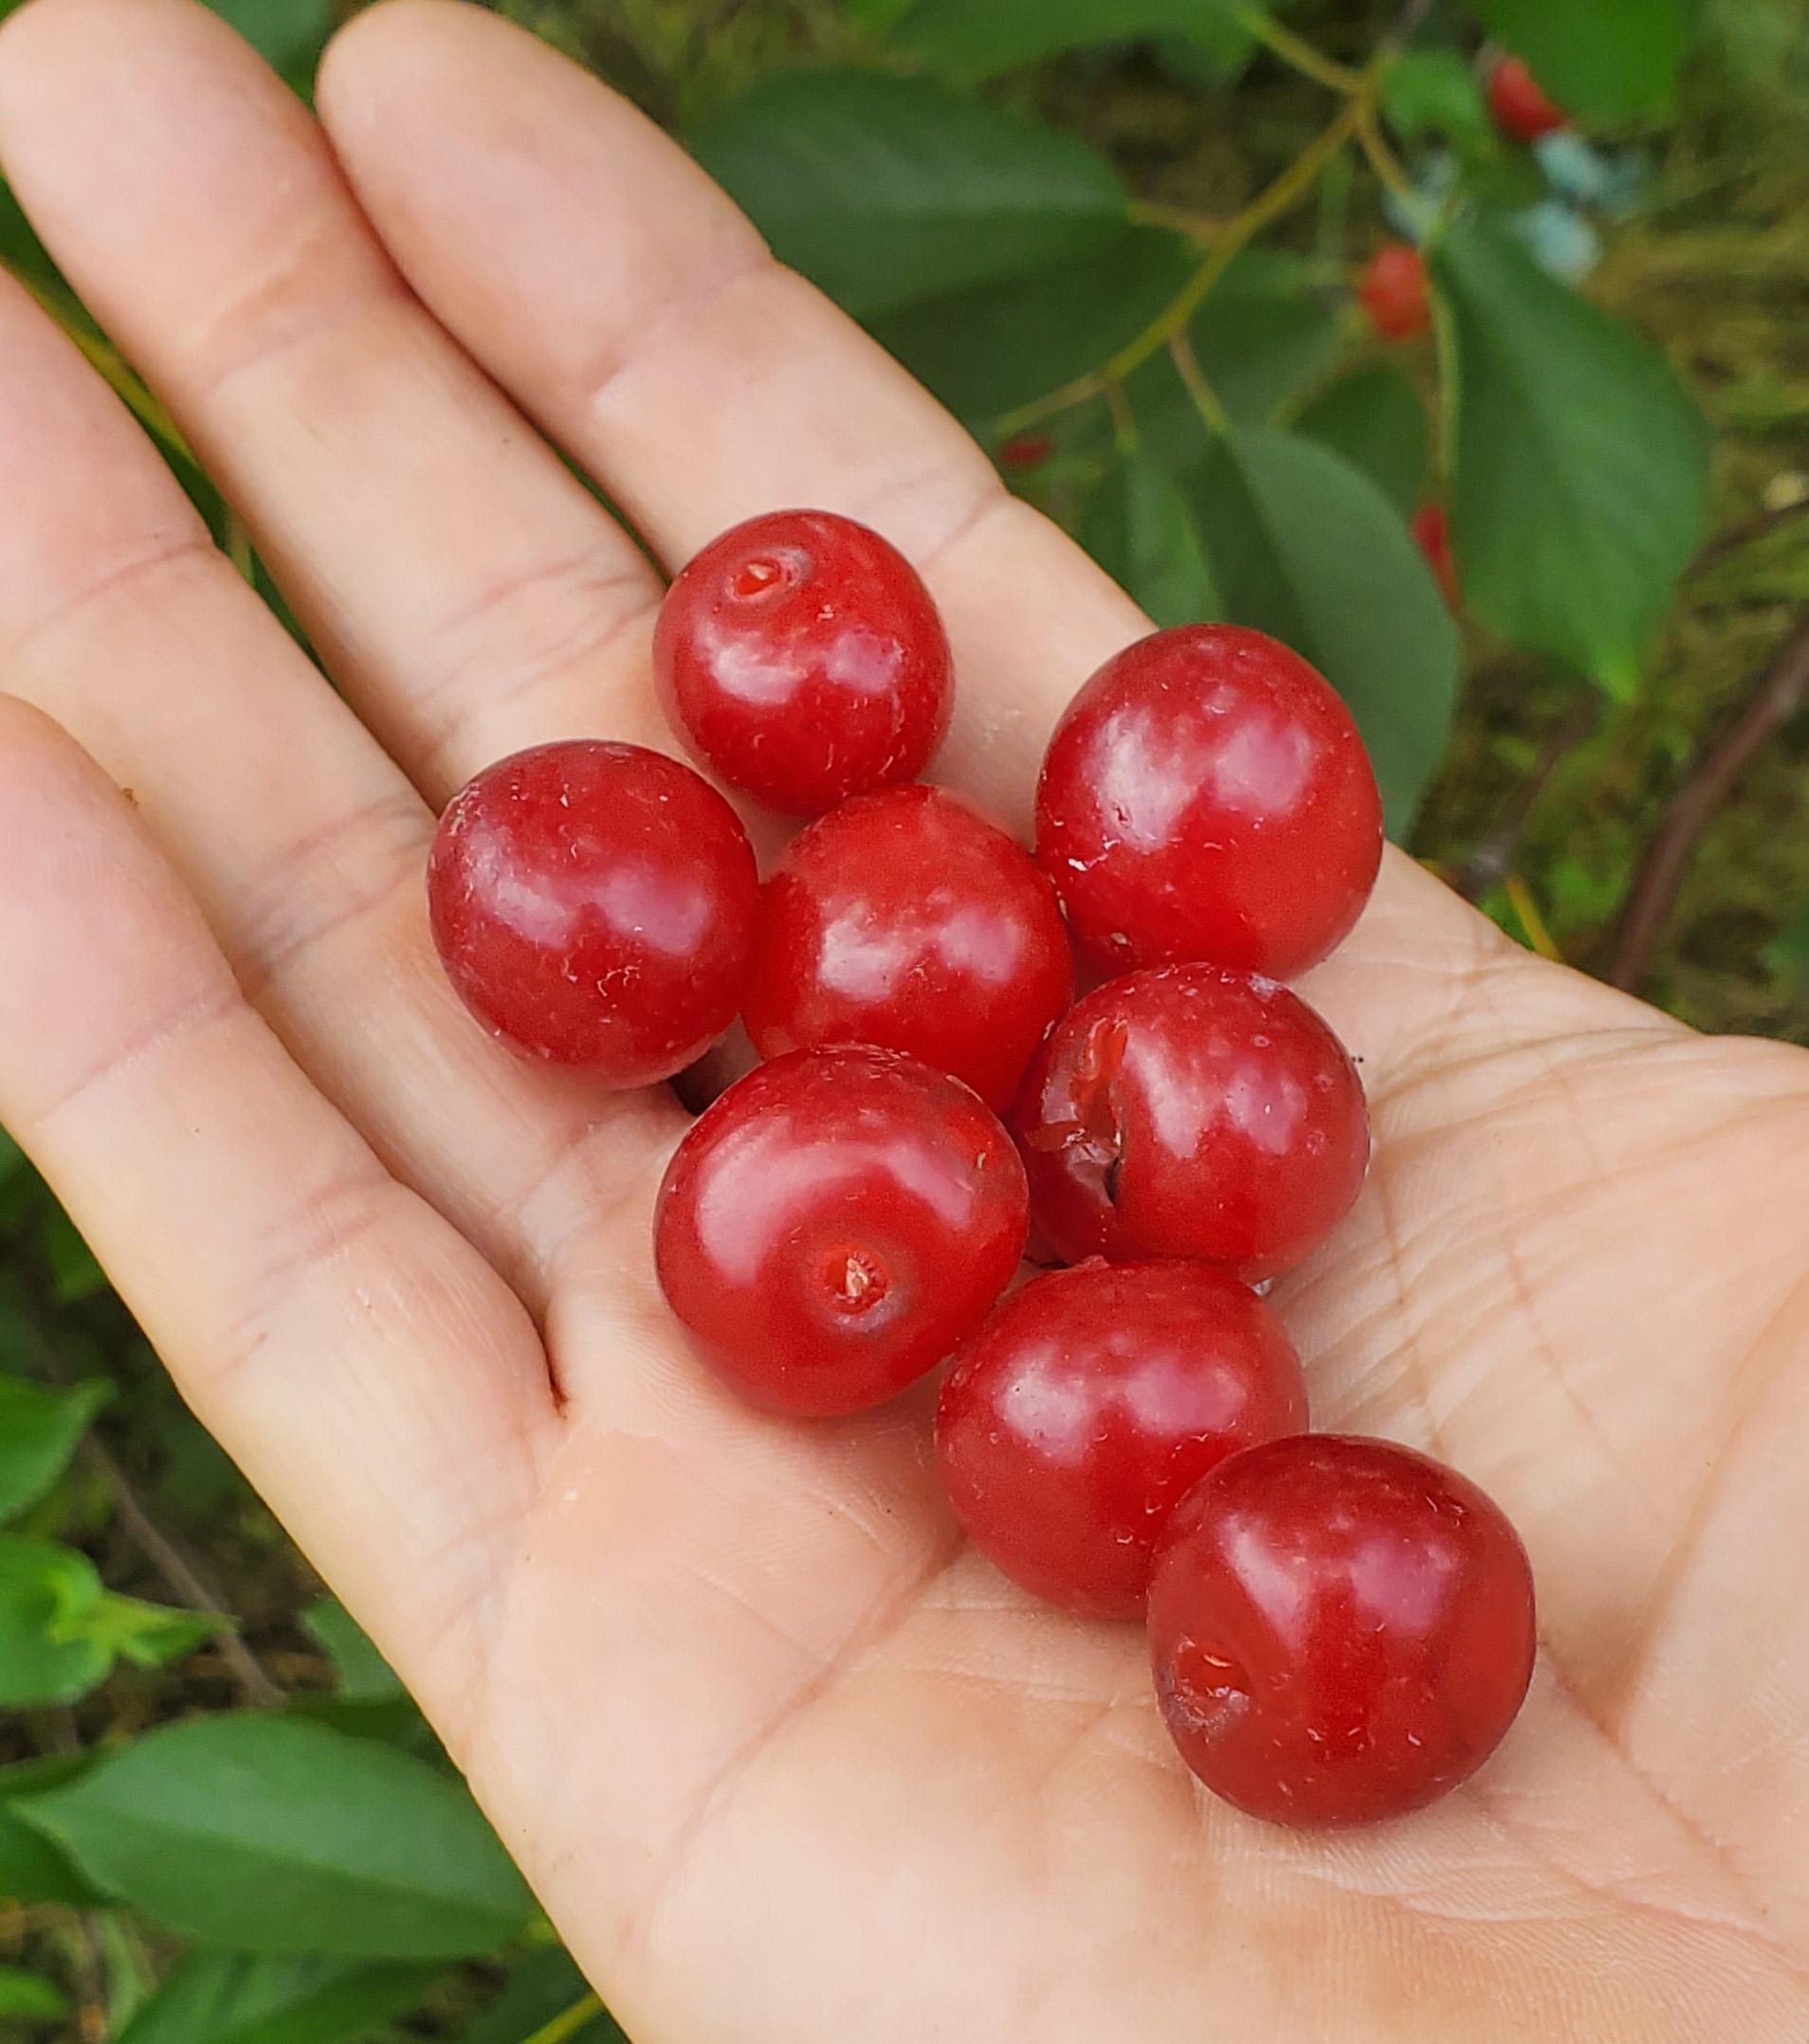 Tart cherries in an open hand.